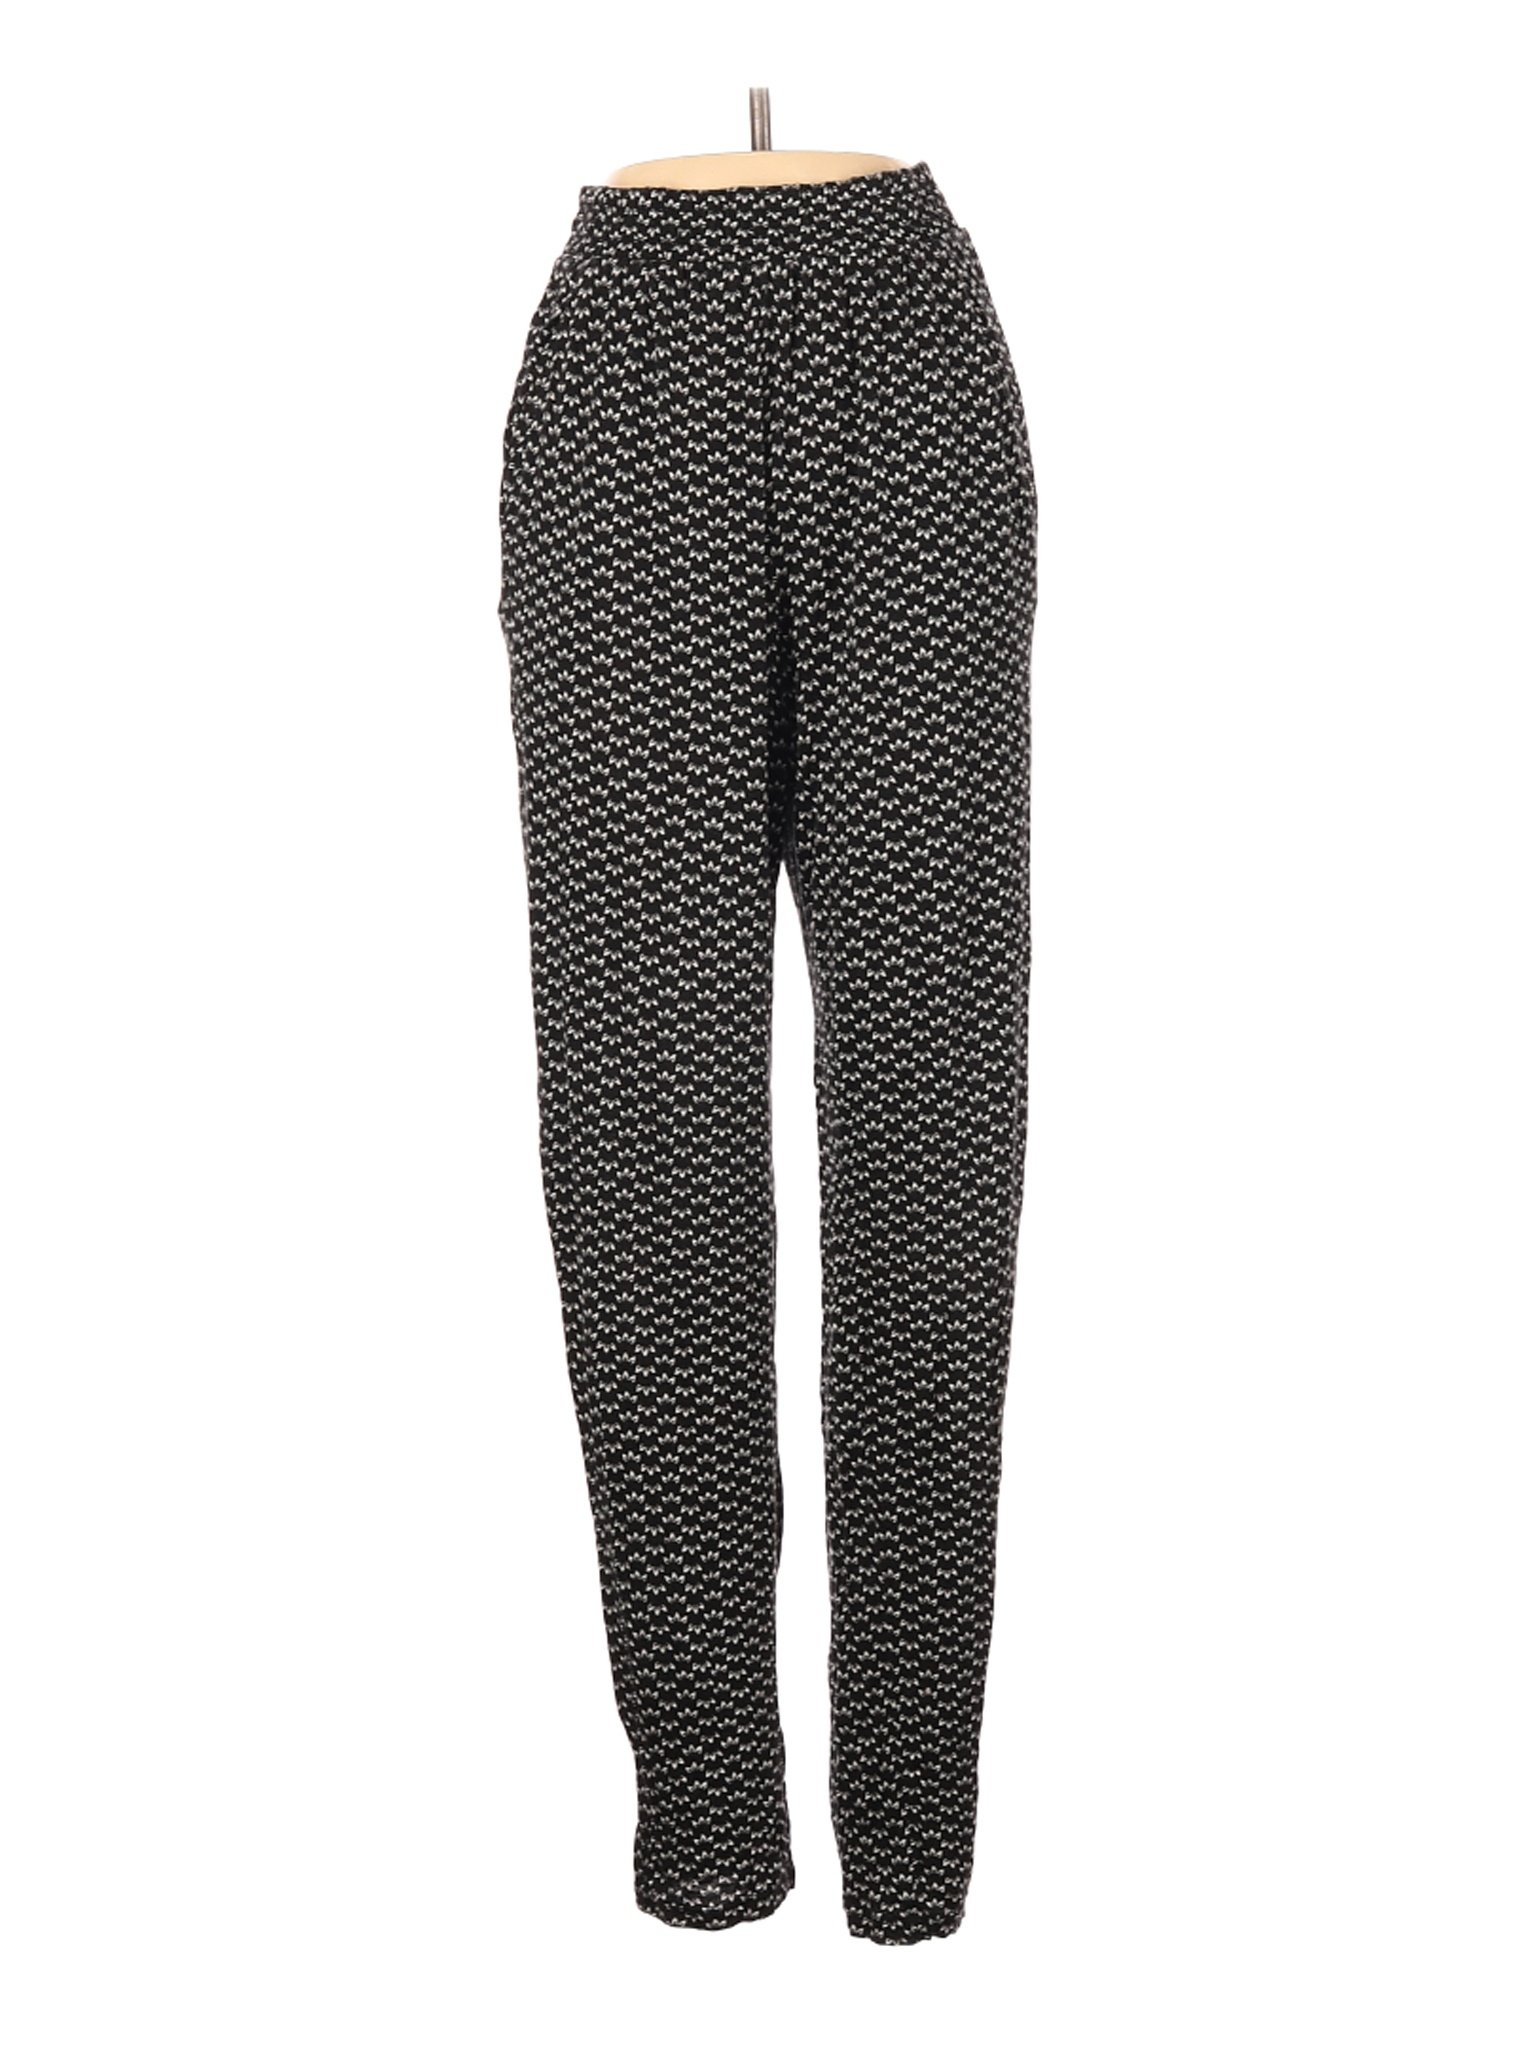 H&M Women Black Casual Pants XS | eBay